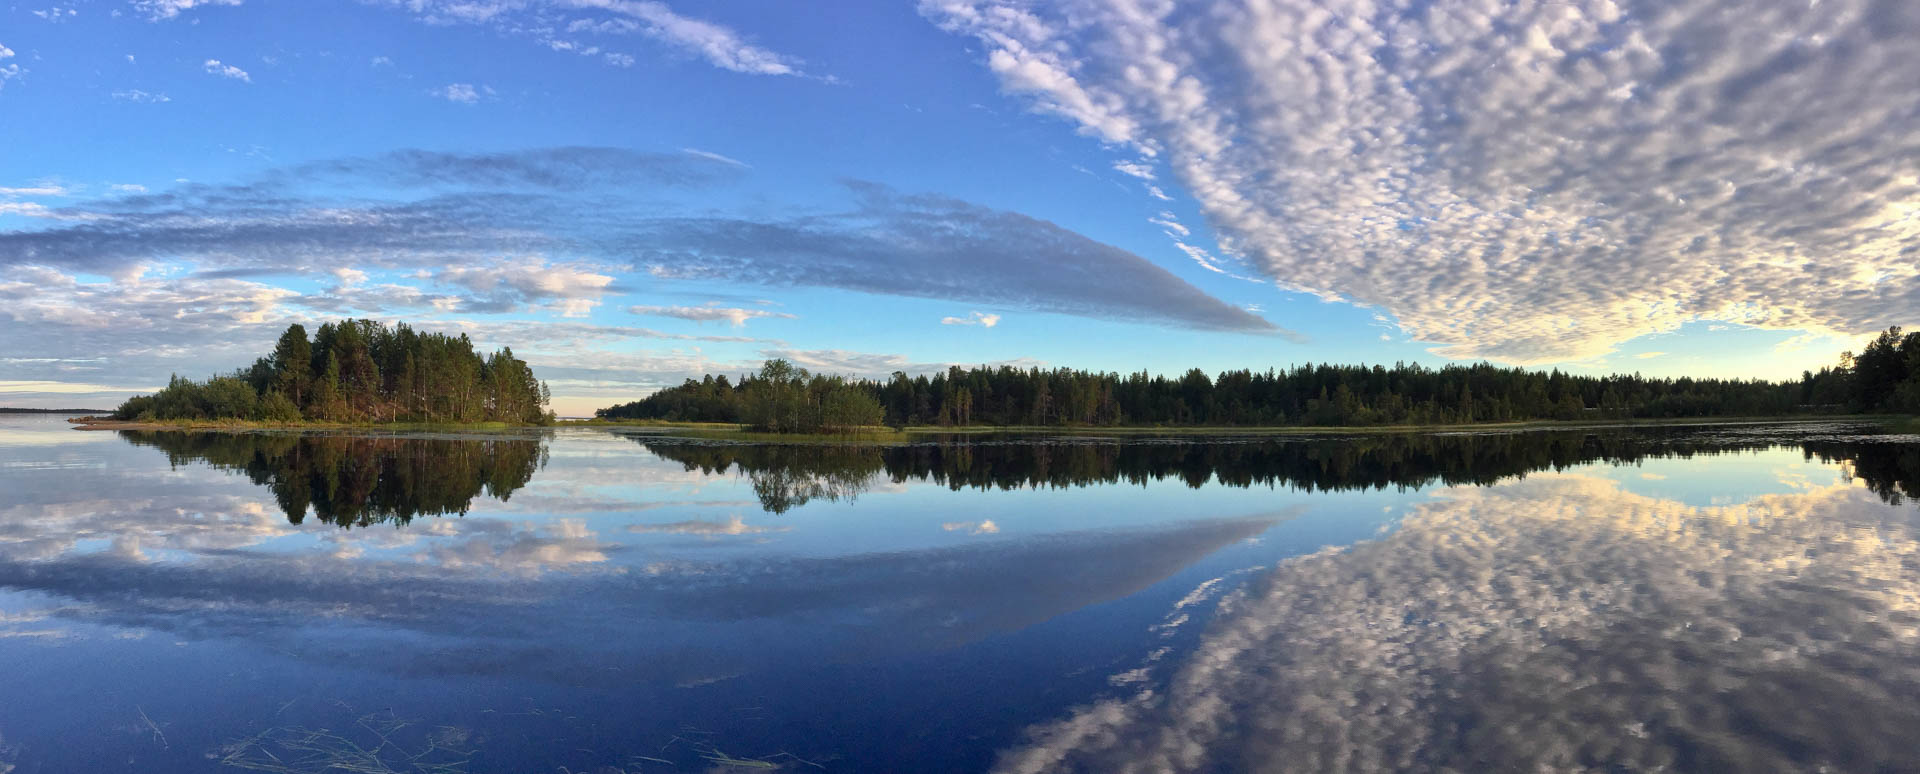 Lake Inari, paradise can't be more beautiful and enchanting.